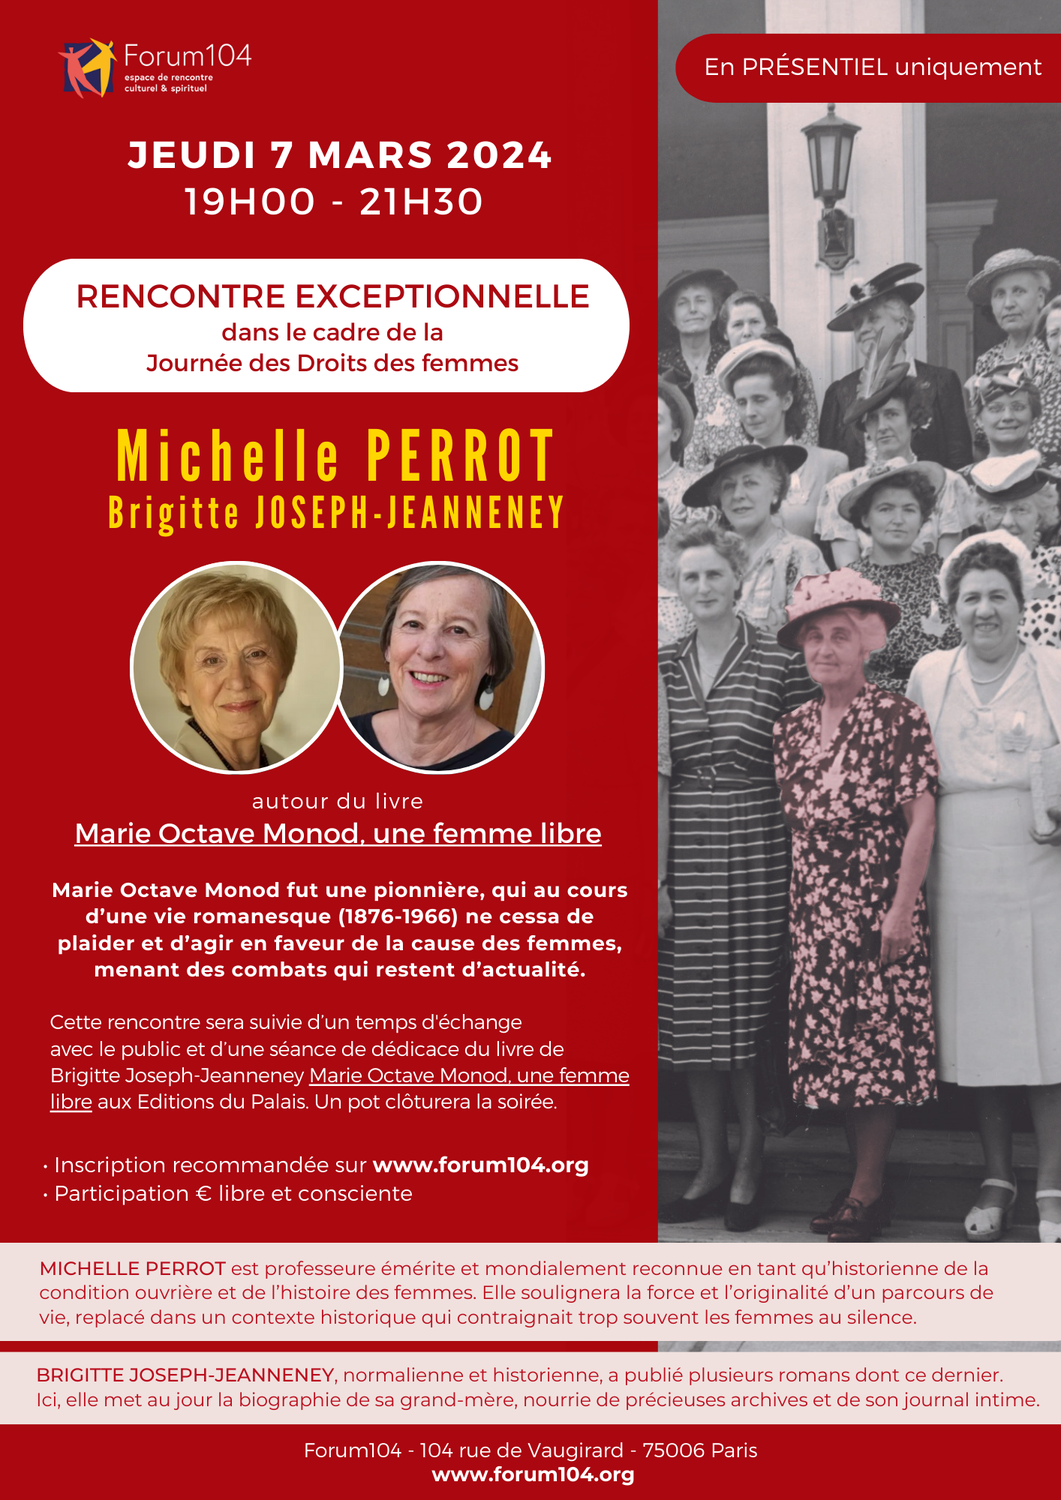 Rencontre exceptionnelle avec MICHELLE PERROT et Brigitte Joseph-Jeanneney